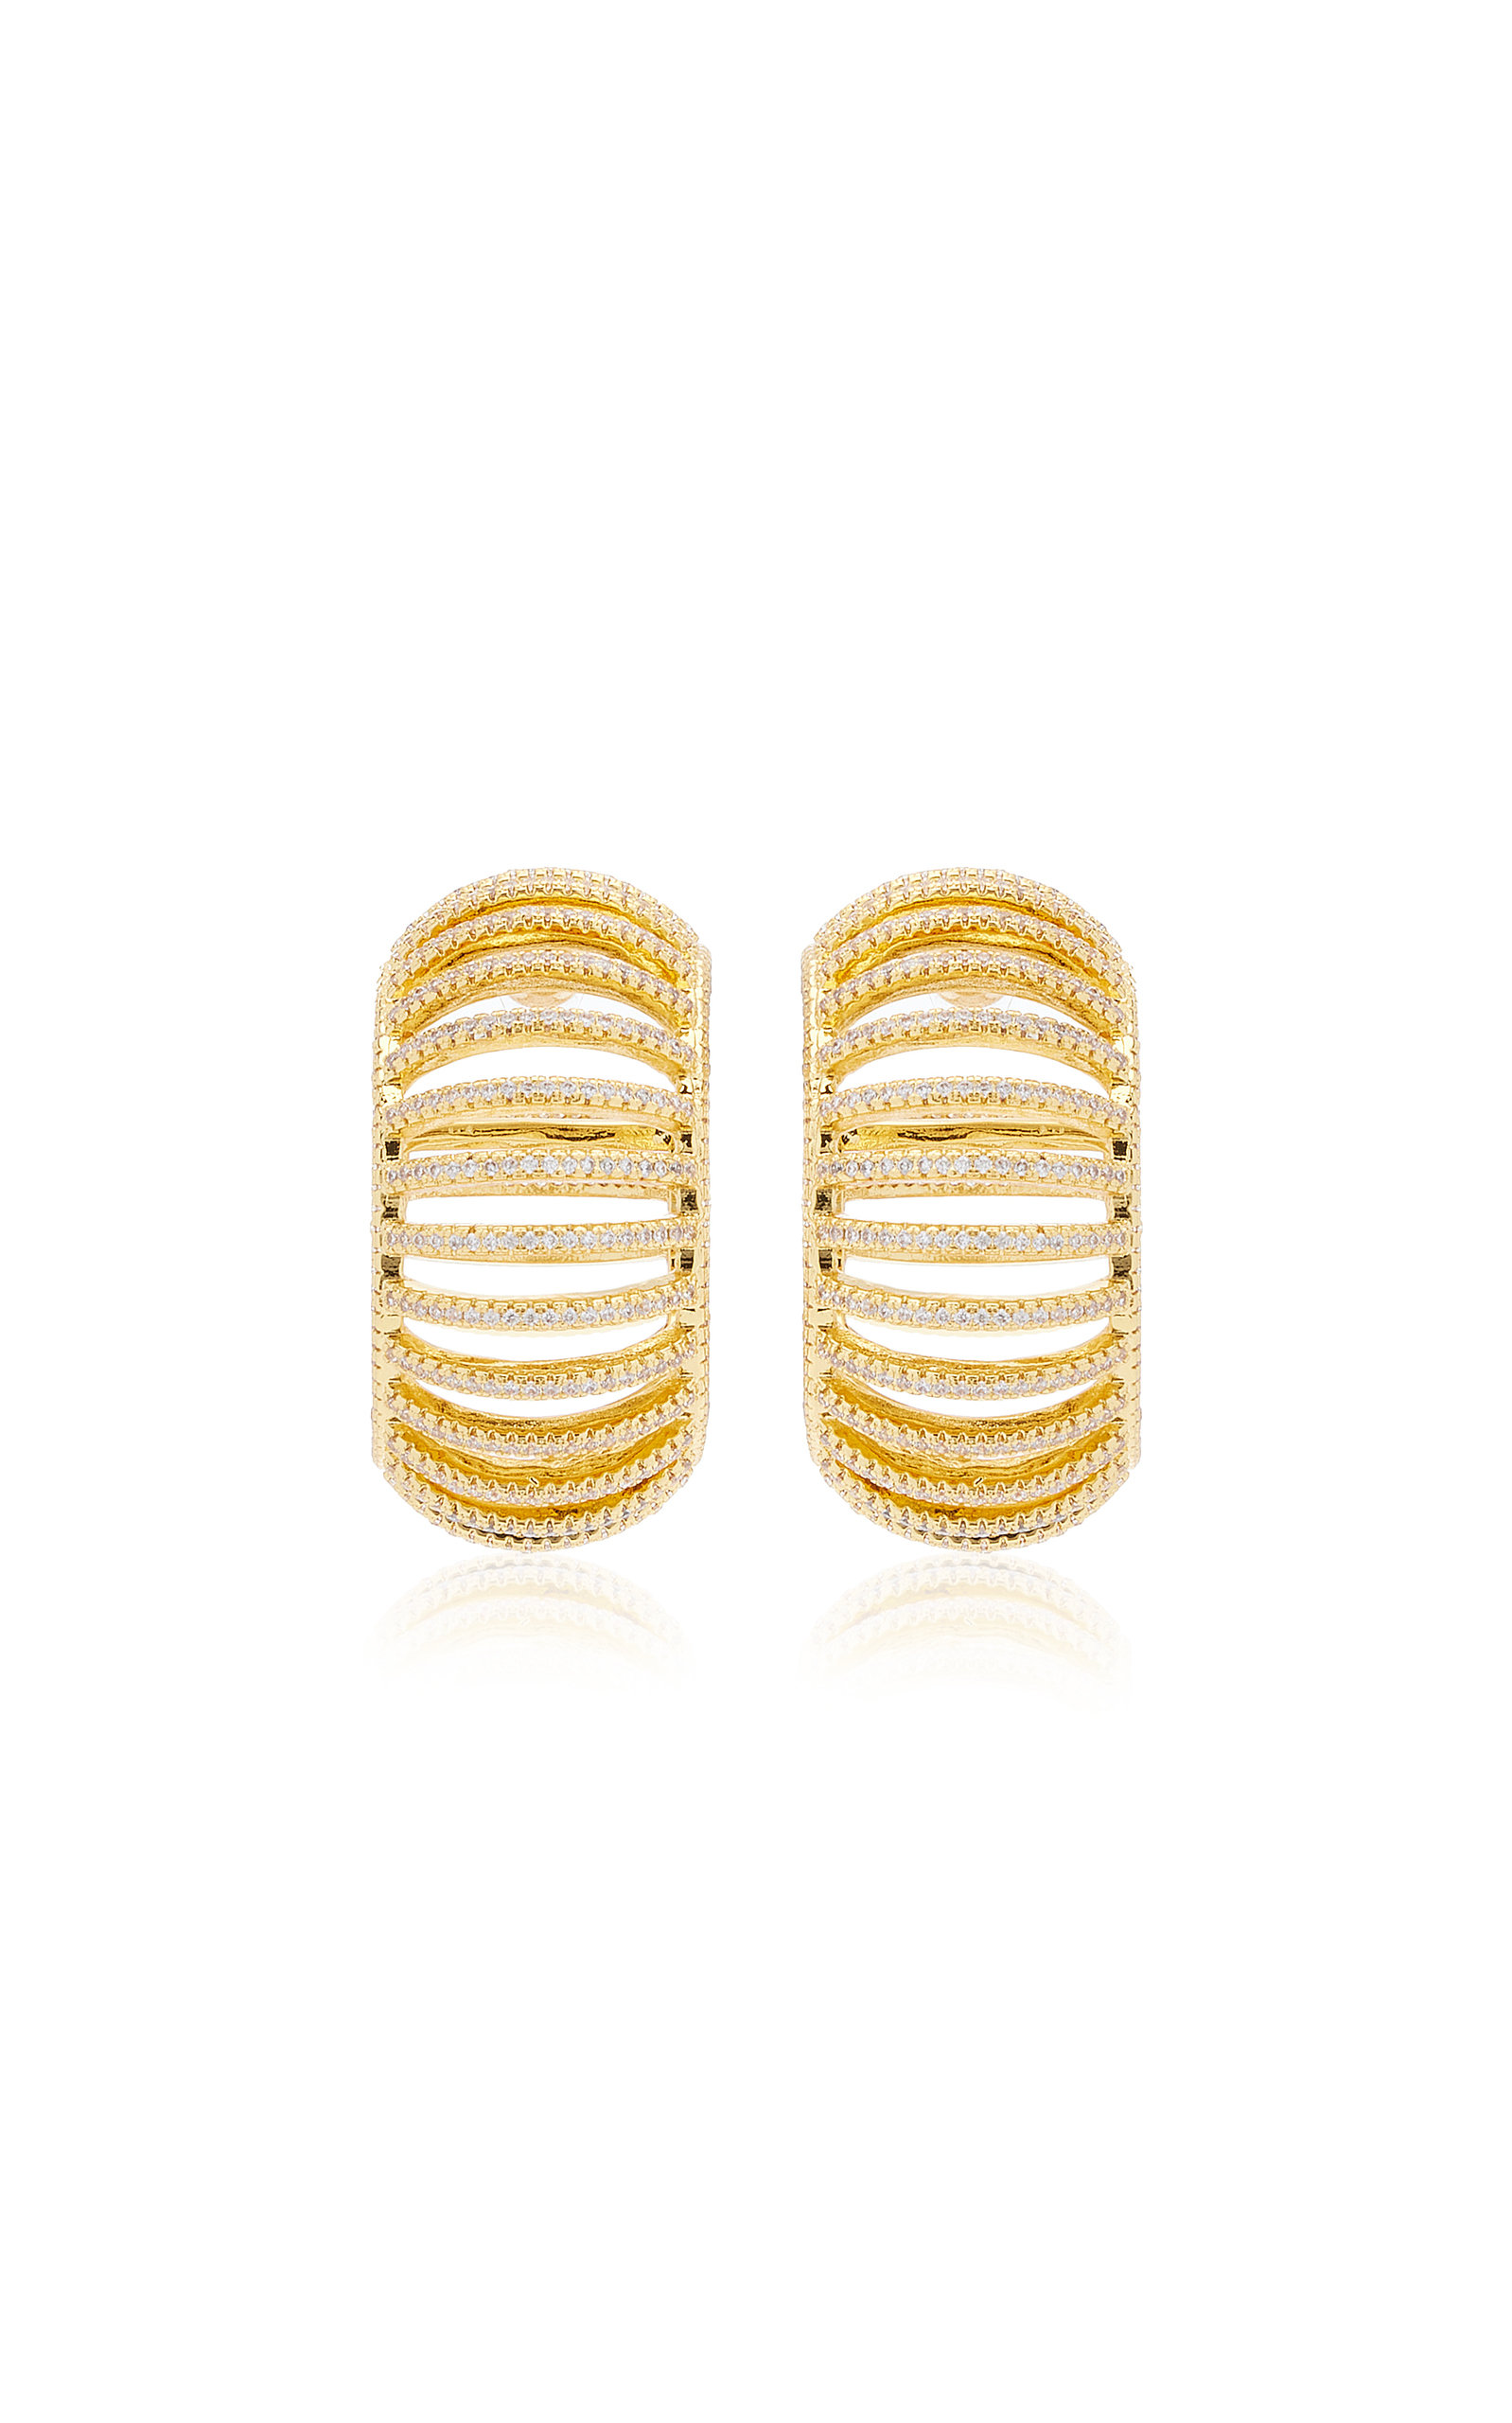 Cult Gaia - Women's Davina Gold-Tone Earrings - Gold - OS - Moda Operandi - Gifts For Her